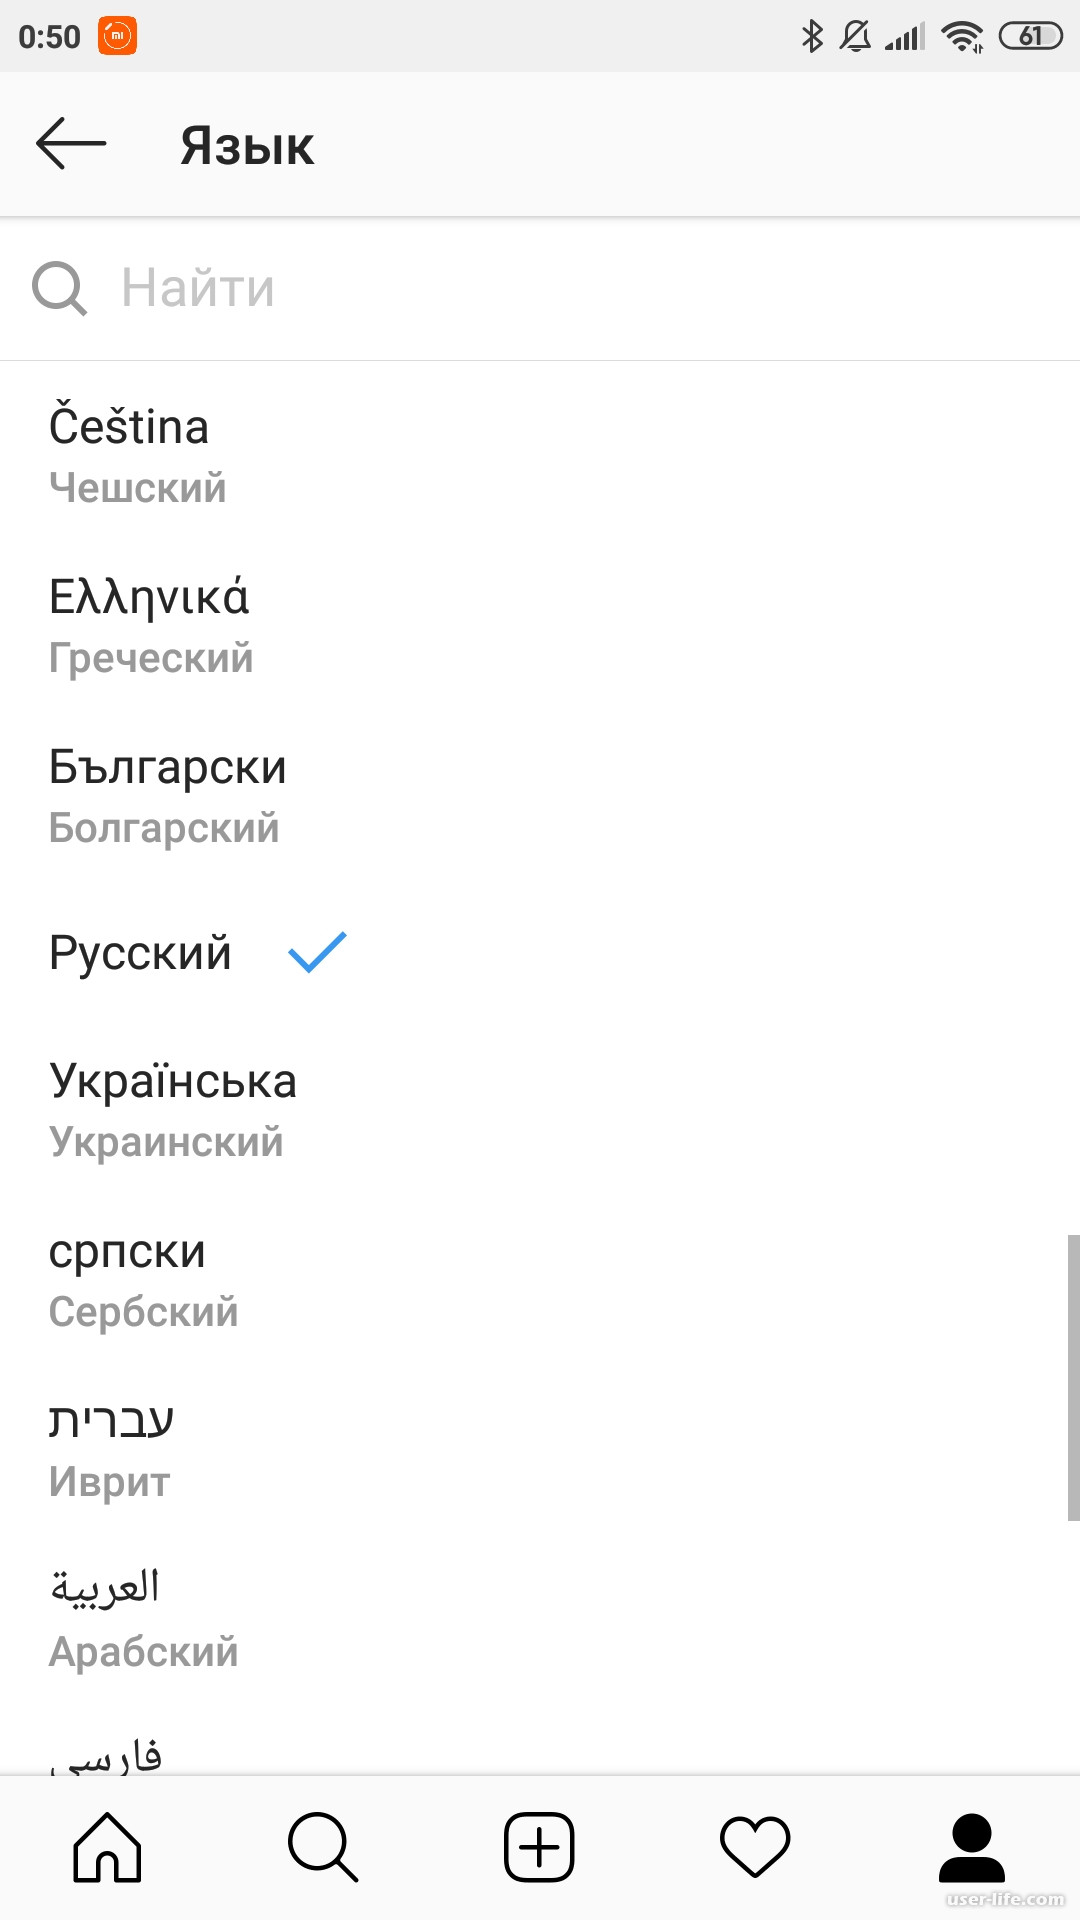 Как поменять язык в телеграмме с английского на русский на андроид фото 75